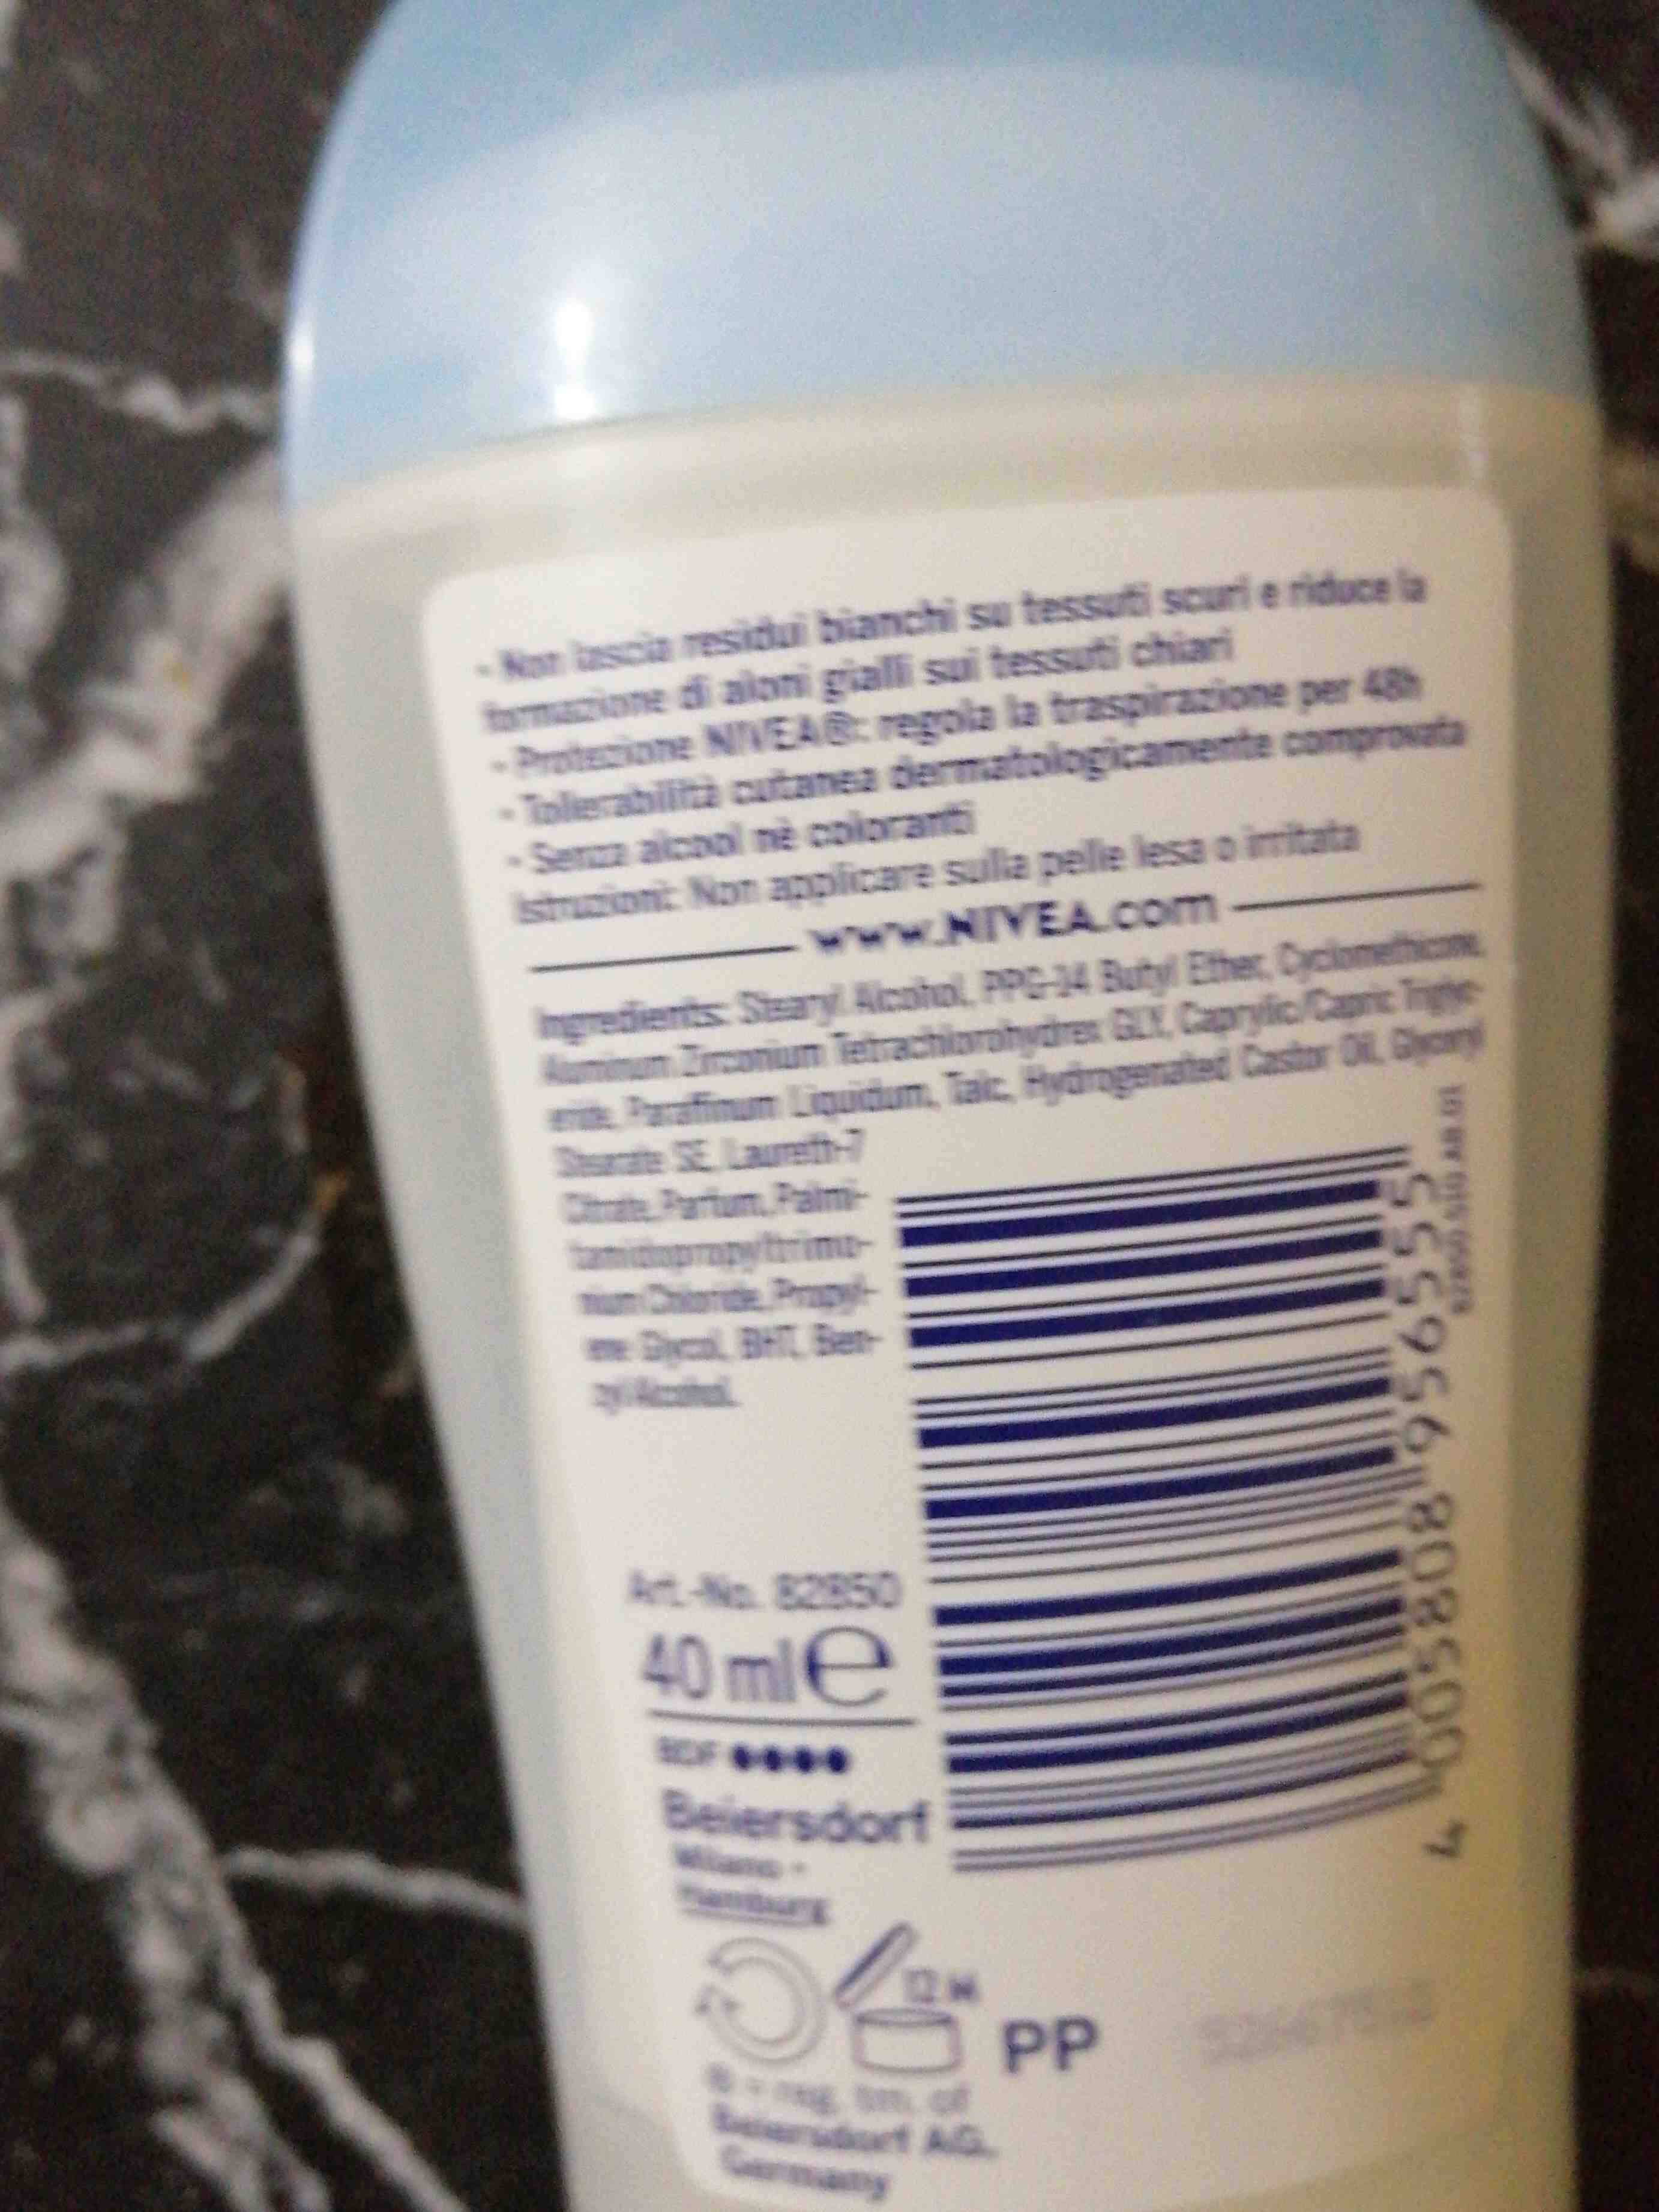 Nivea deodorant - Ingredients - en